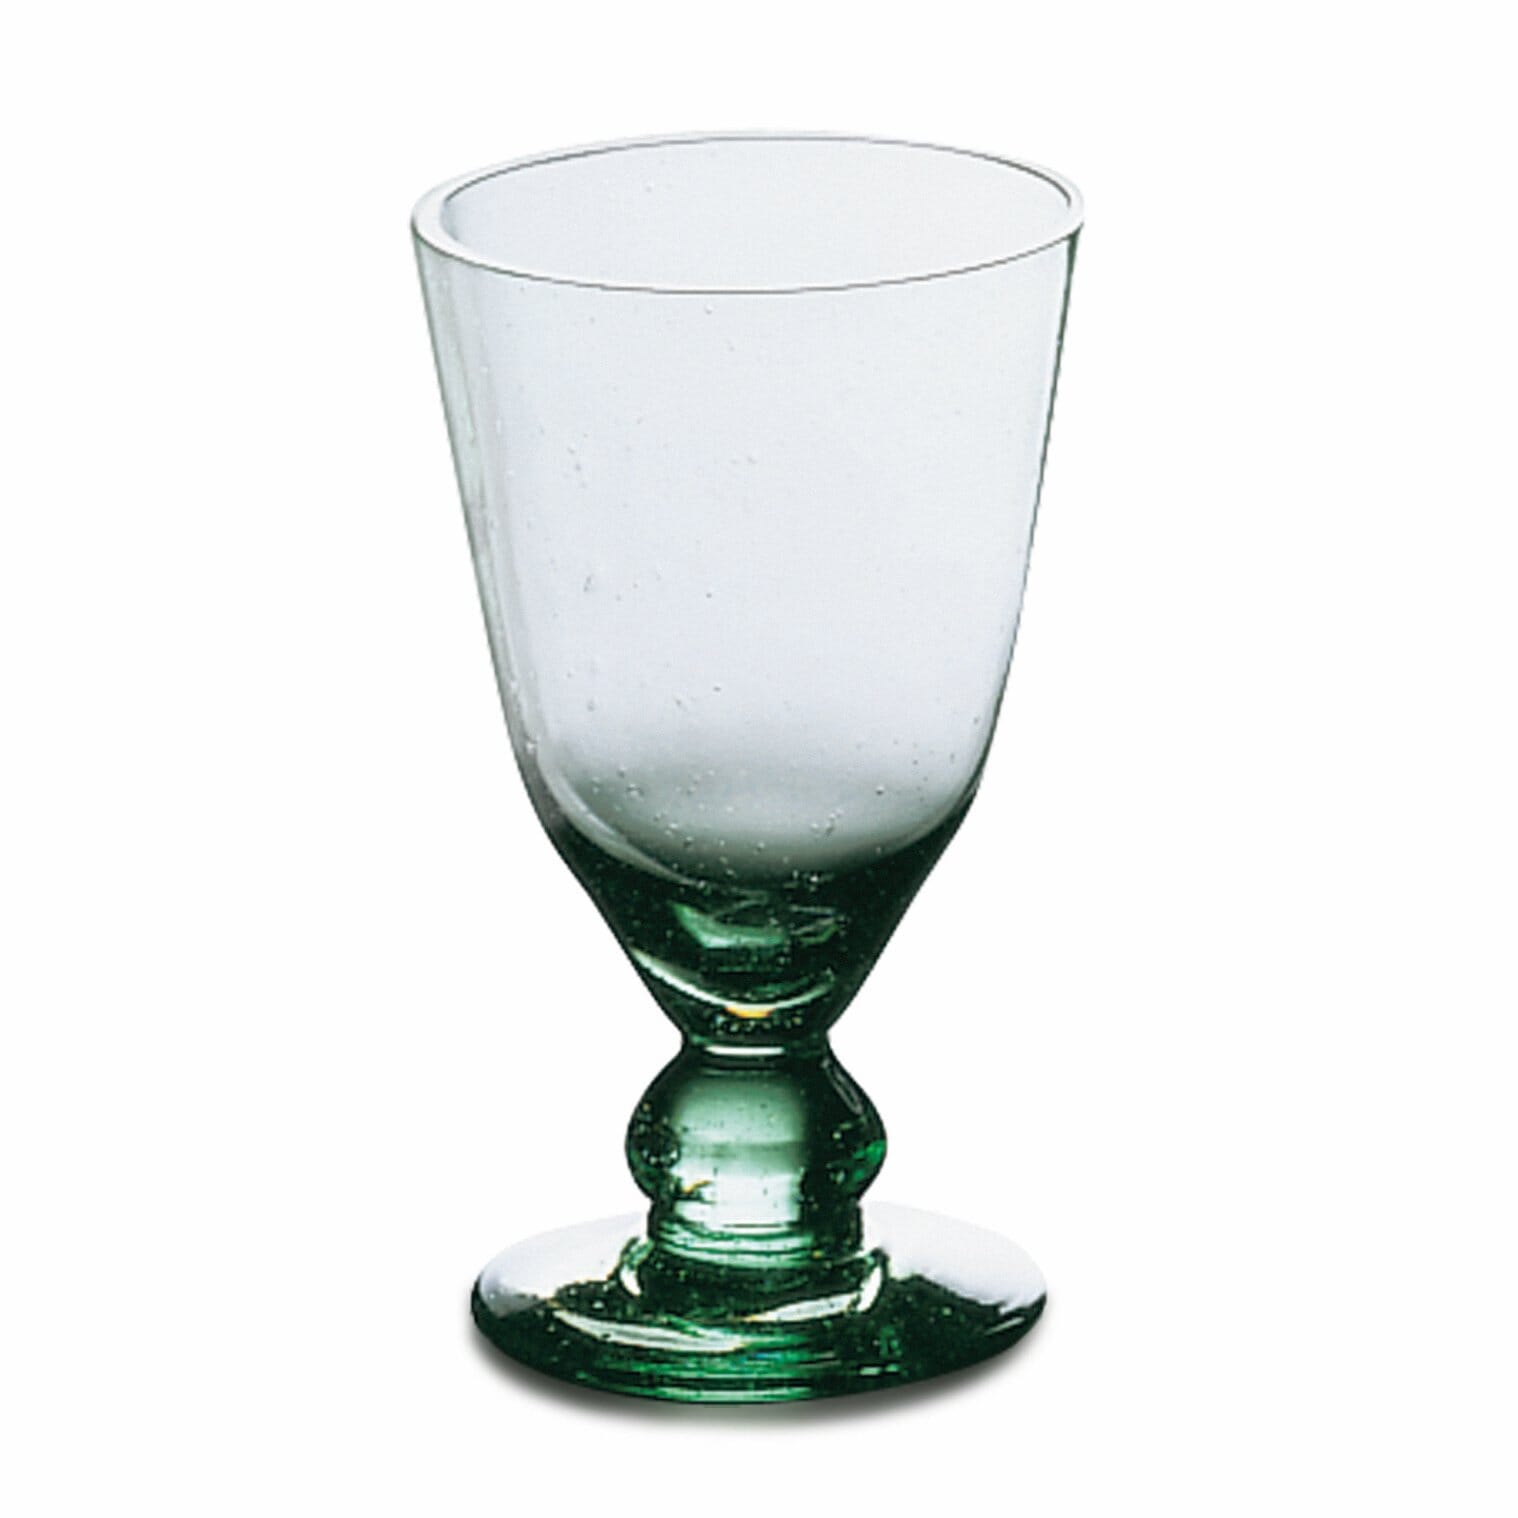 grünes Waldglas Wein Met Bier Glas geblasene meisterliche Handarbeit replika